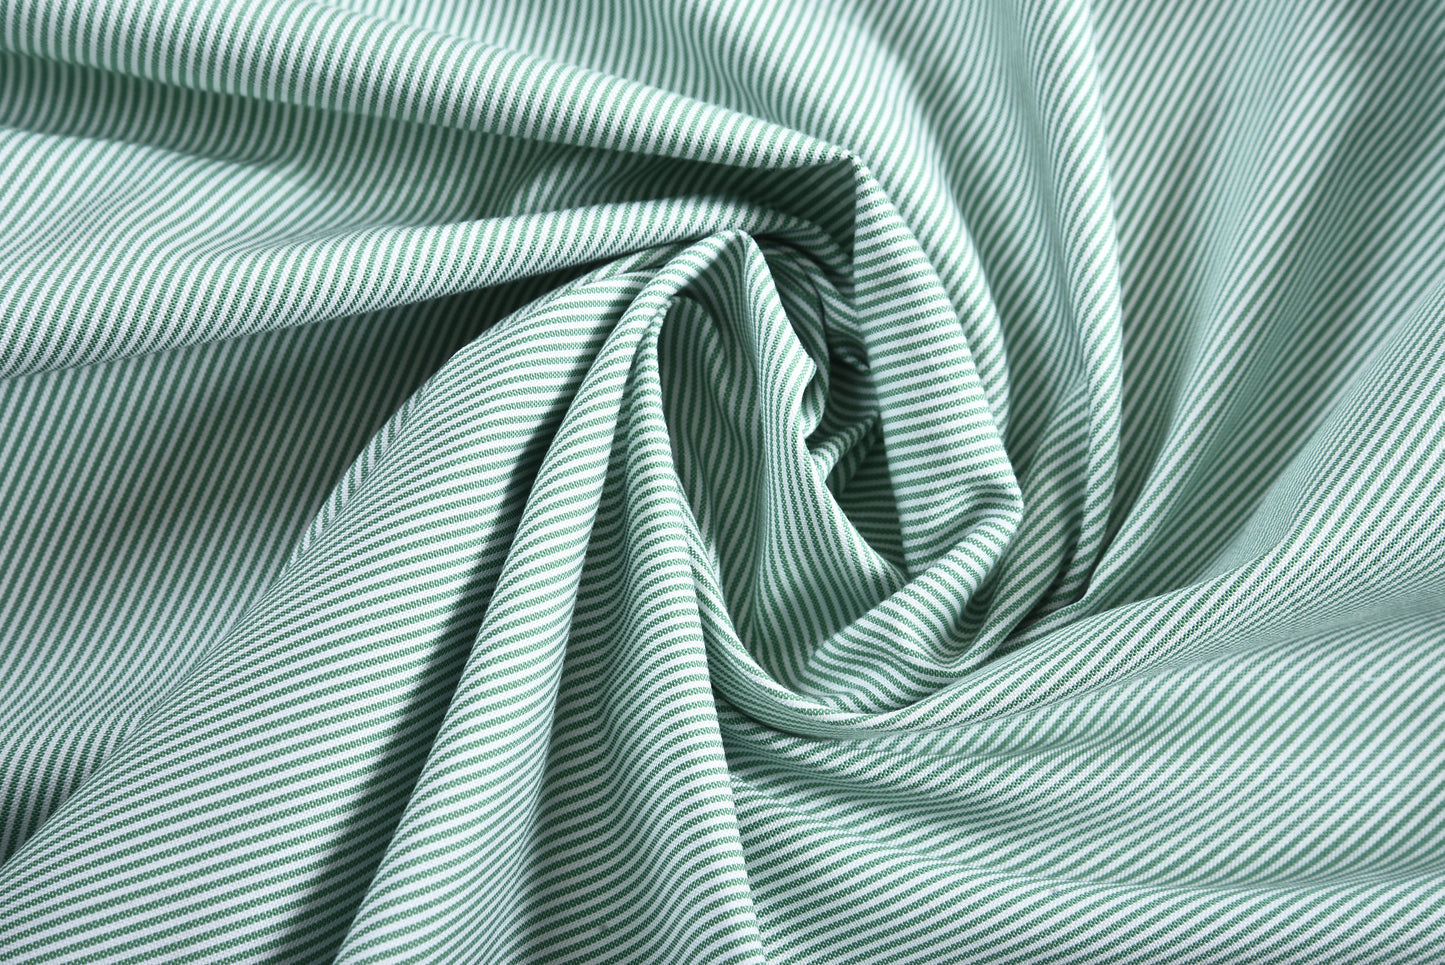 Green Pin Stripes On White